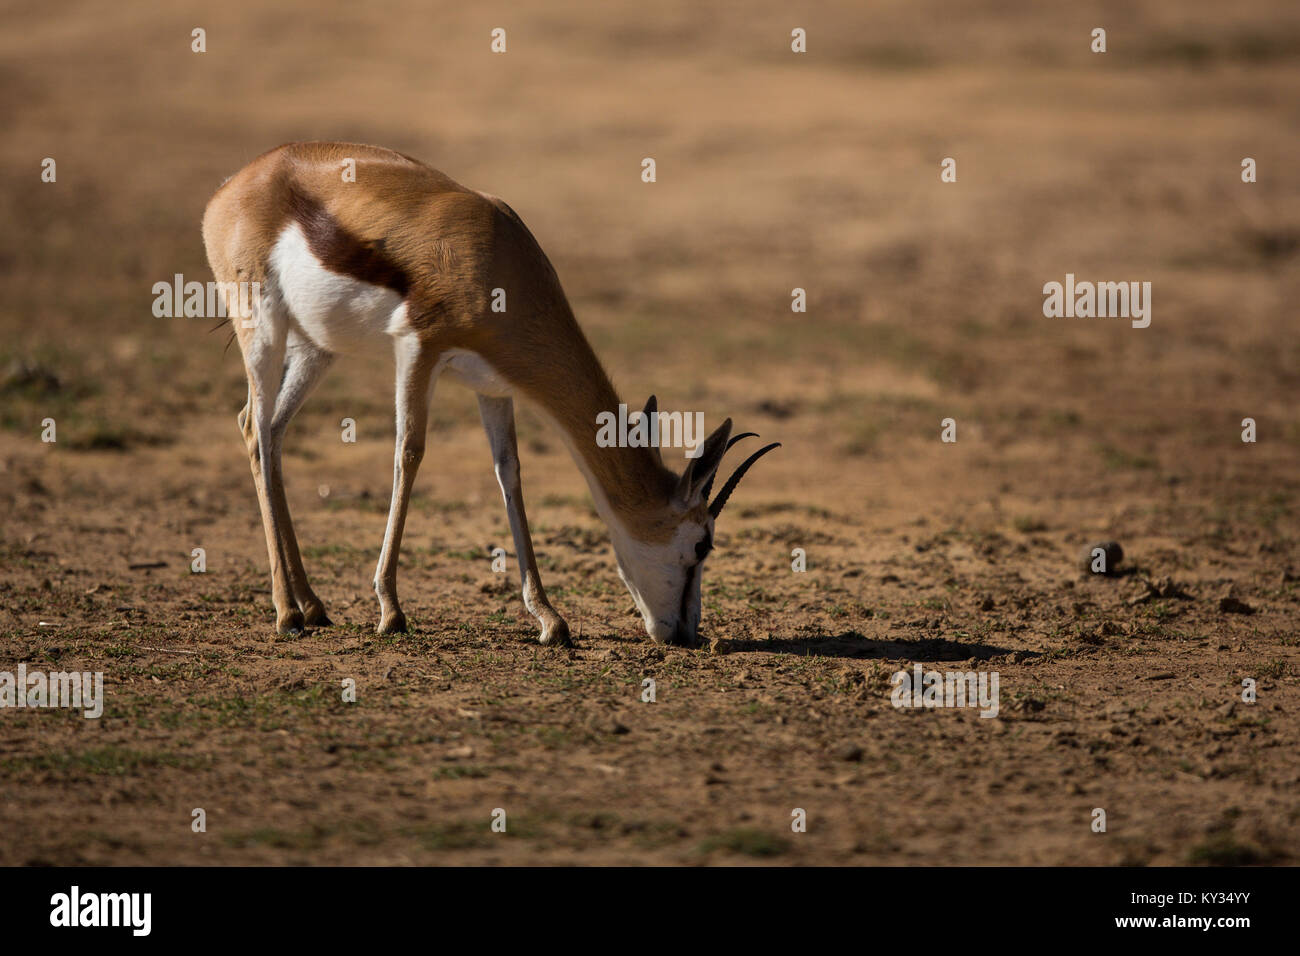 Wild deer grazing on a barren land Stock Photo